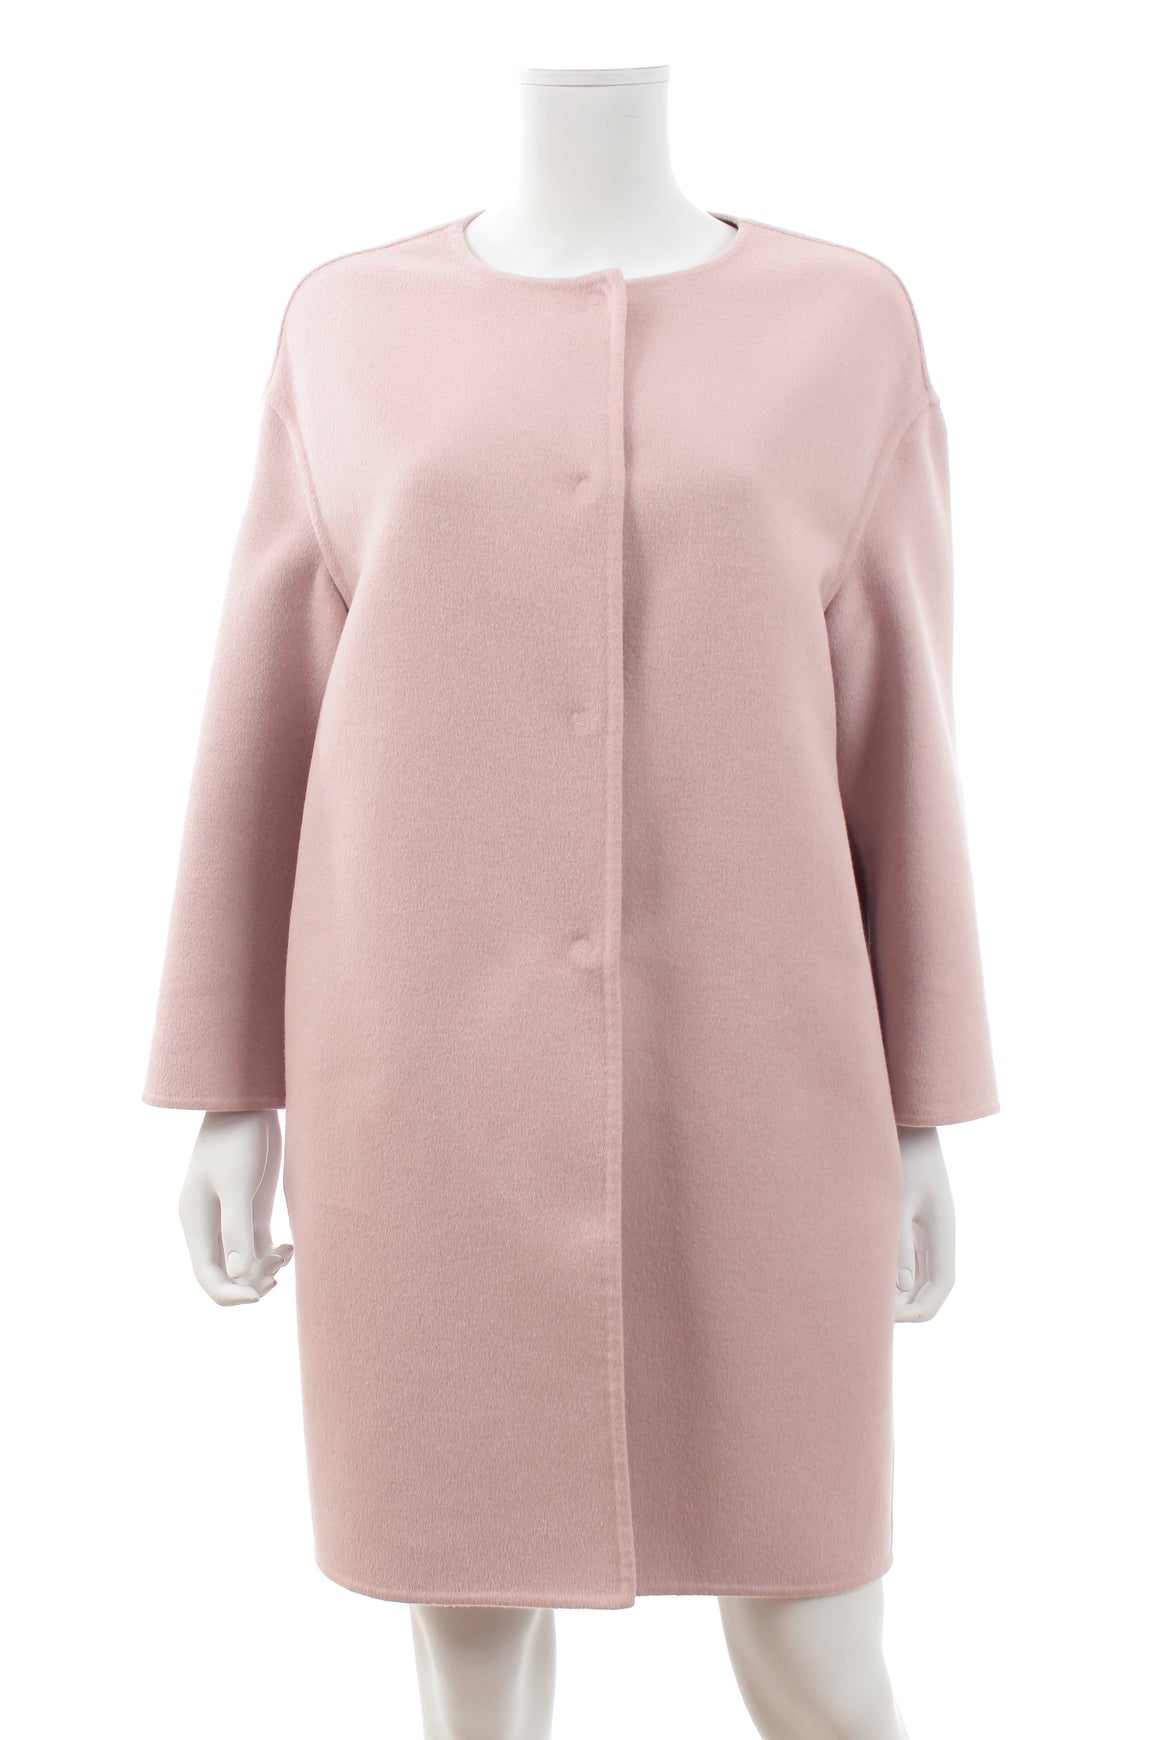 Prada Collarless Wool-Angora-Cashmere Coat